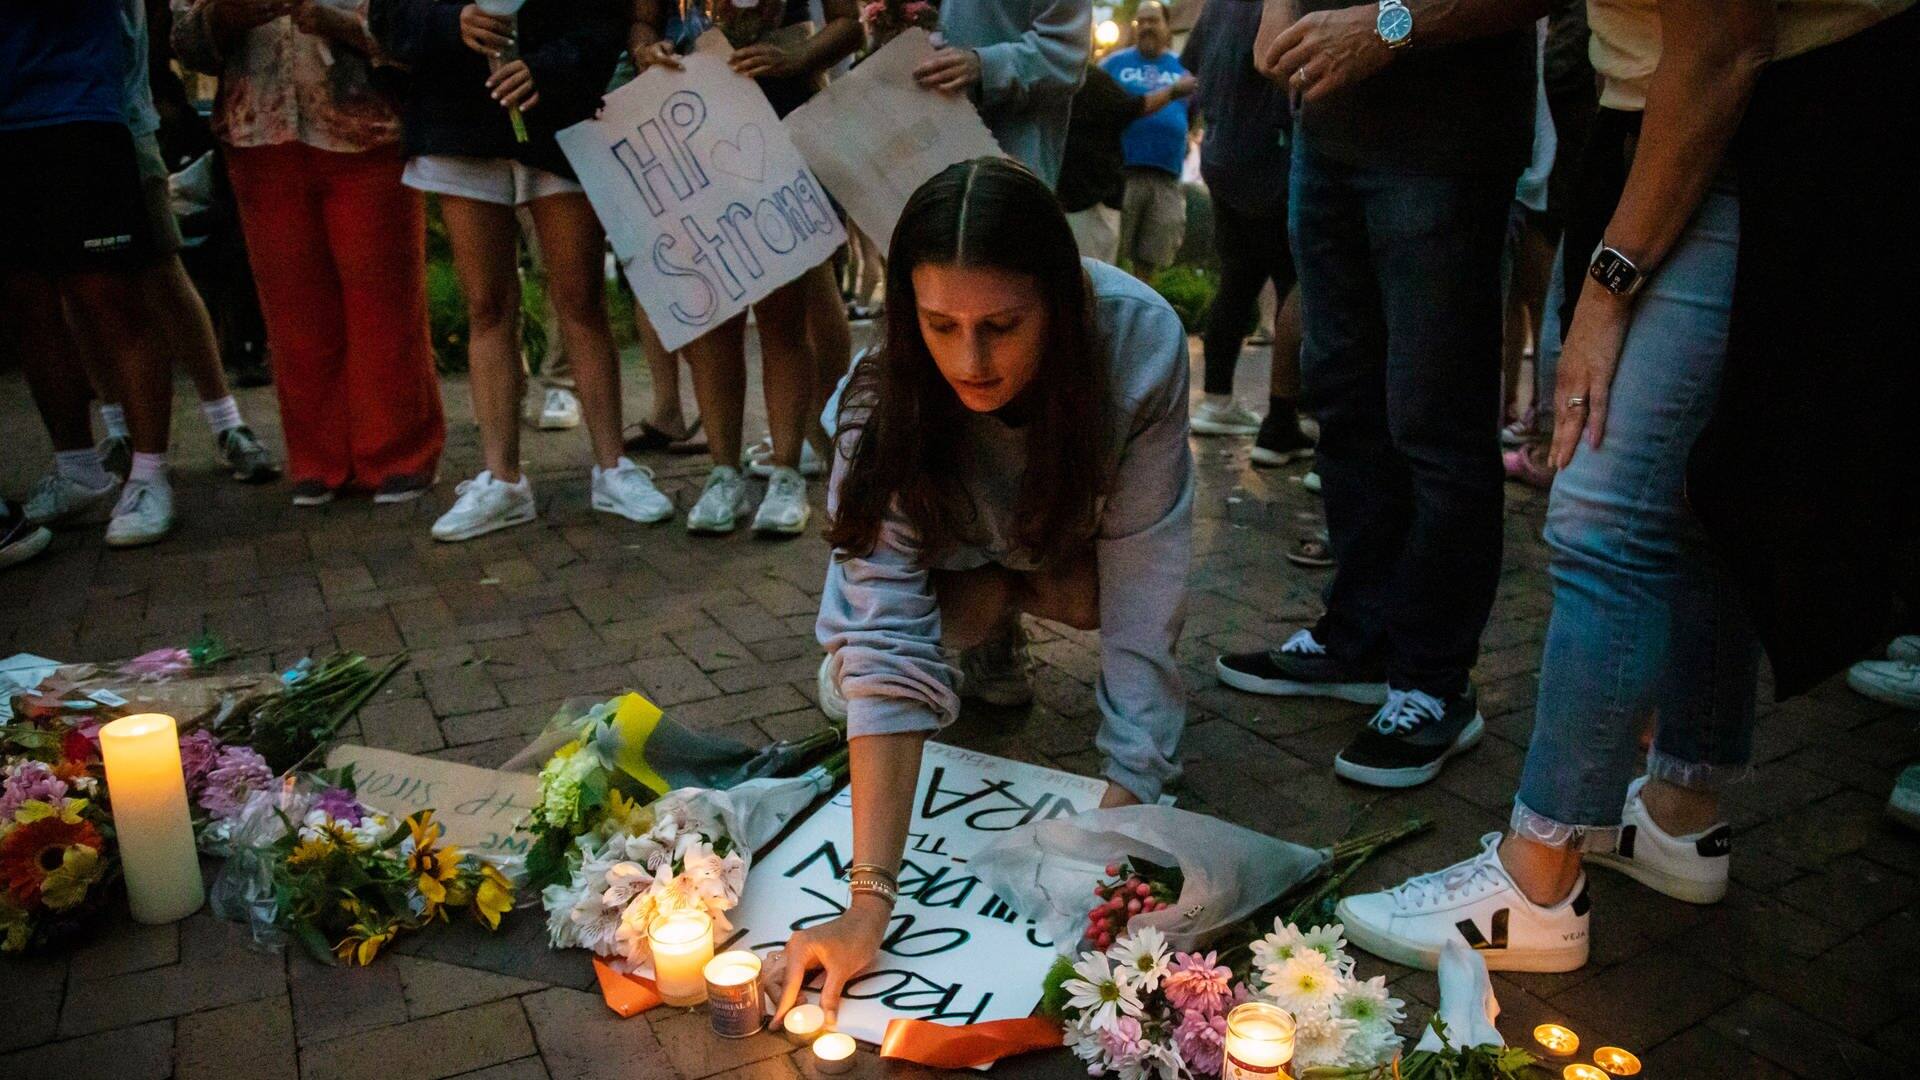 Trauernde zünden in Highland Park Kerzen für die Opfer des Amoklaufs an (Foto: dpa Bildfunk, picture alliance/dpa/Chicago Sun-Times/AP | Ashlee Rezin)